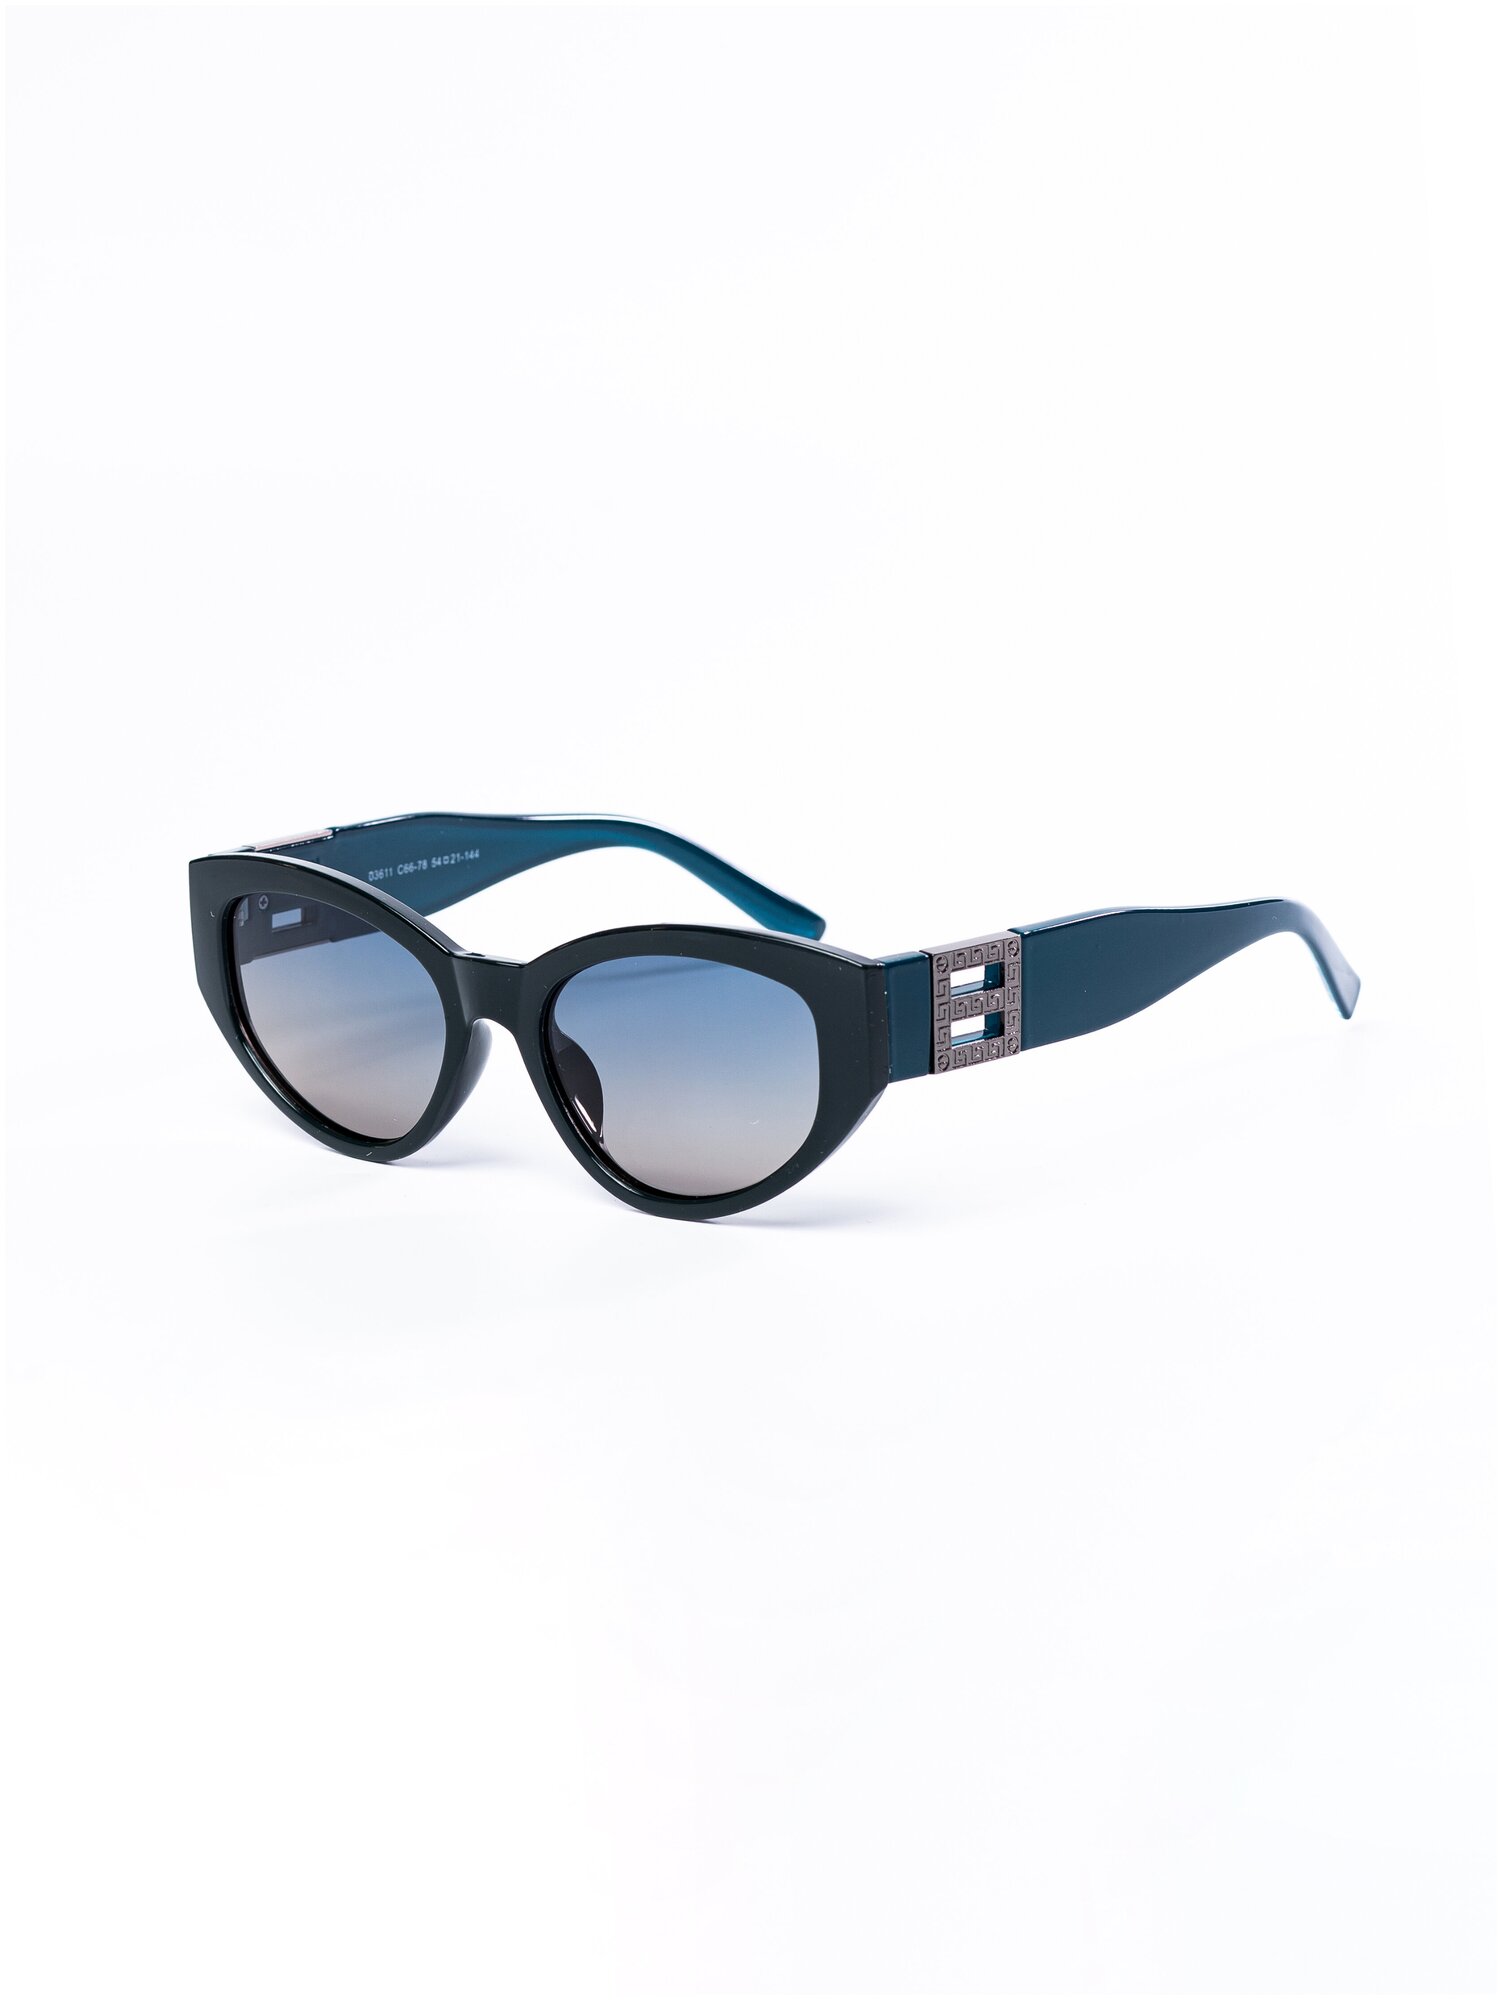 Солнцезащитные очки женские / Оправа «кошачий глаз» / Стильные очки / Ультрафиолетовый фильтр / Защита UV400 / Темные очки 200422543